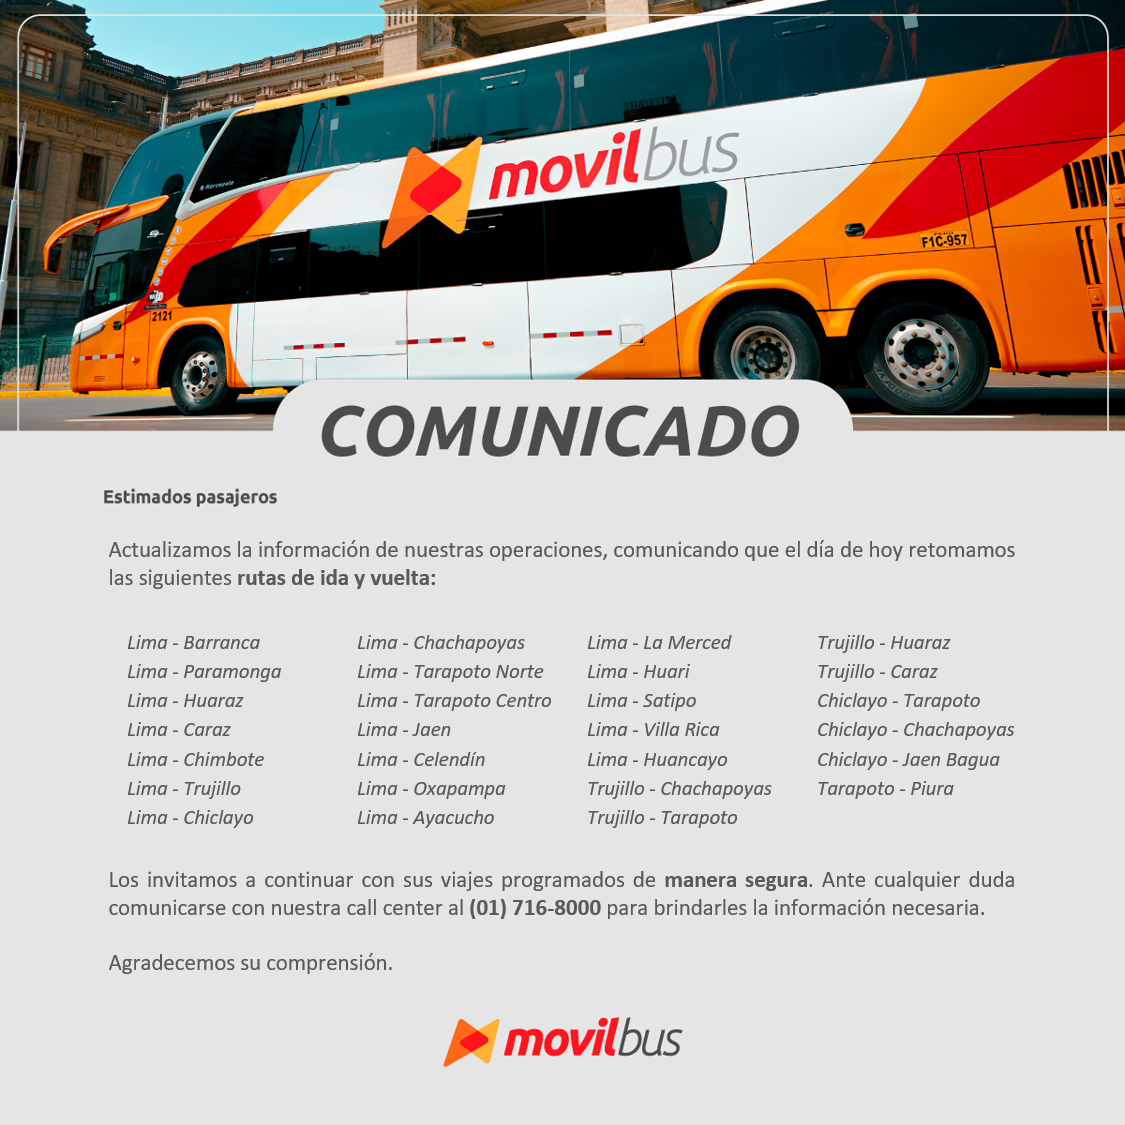 Comunicado de la empresa Movil Bus respecto a los viajes al sur del Perú